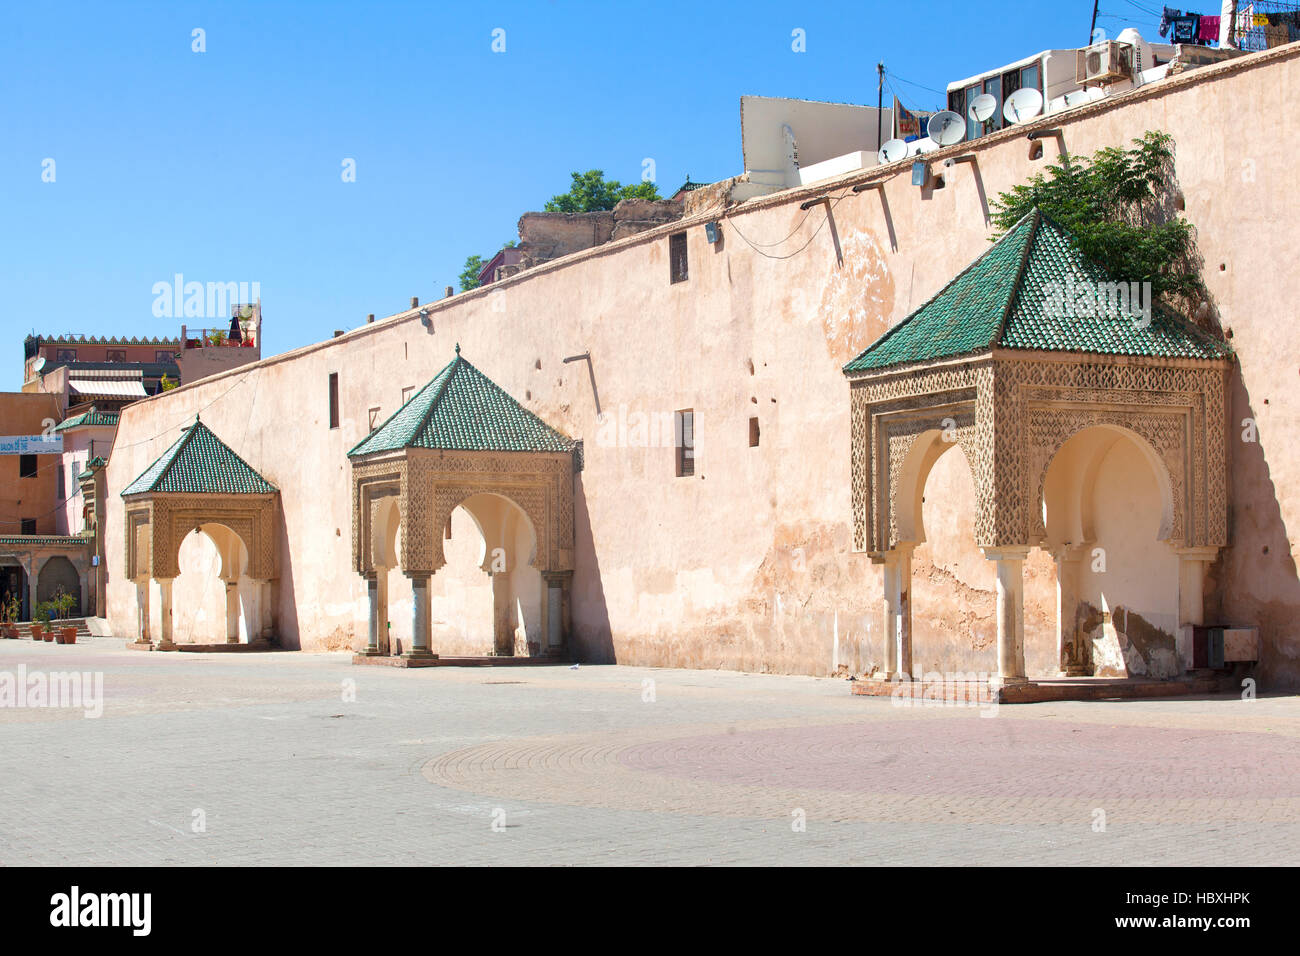 Dans l'architecture impériale El Hedim square. Meknes, Maroc. Banque D'Images